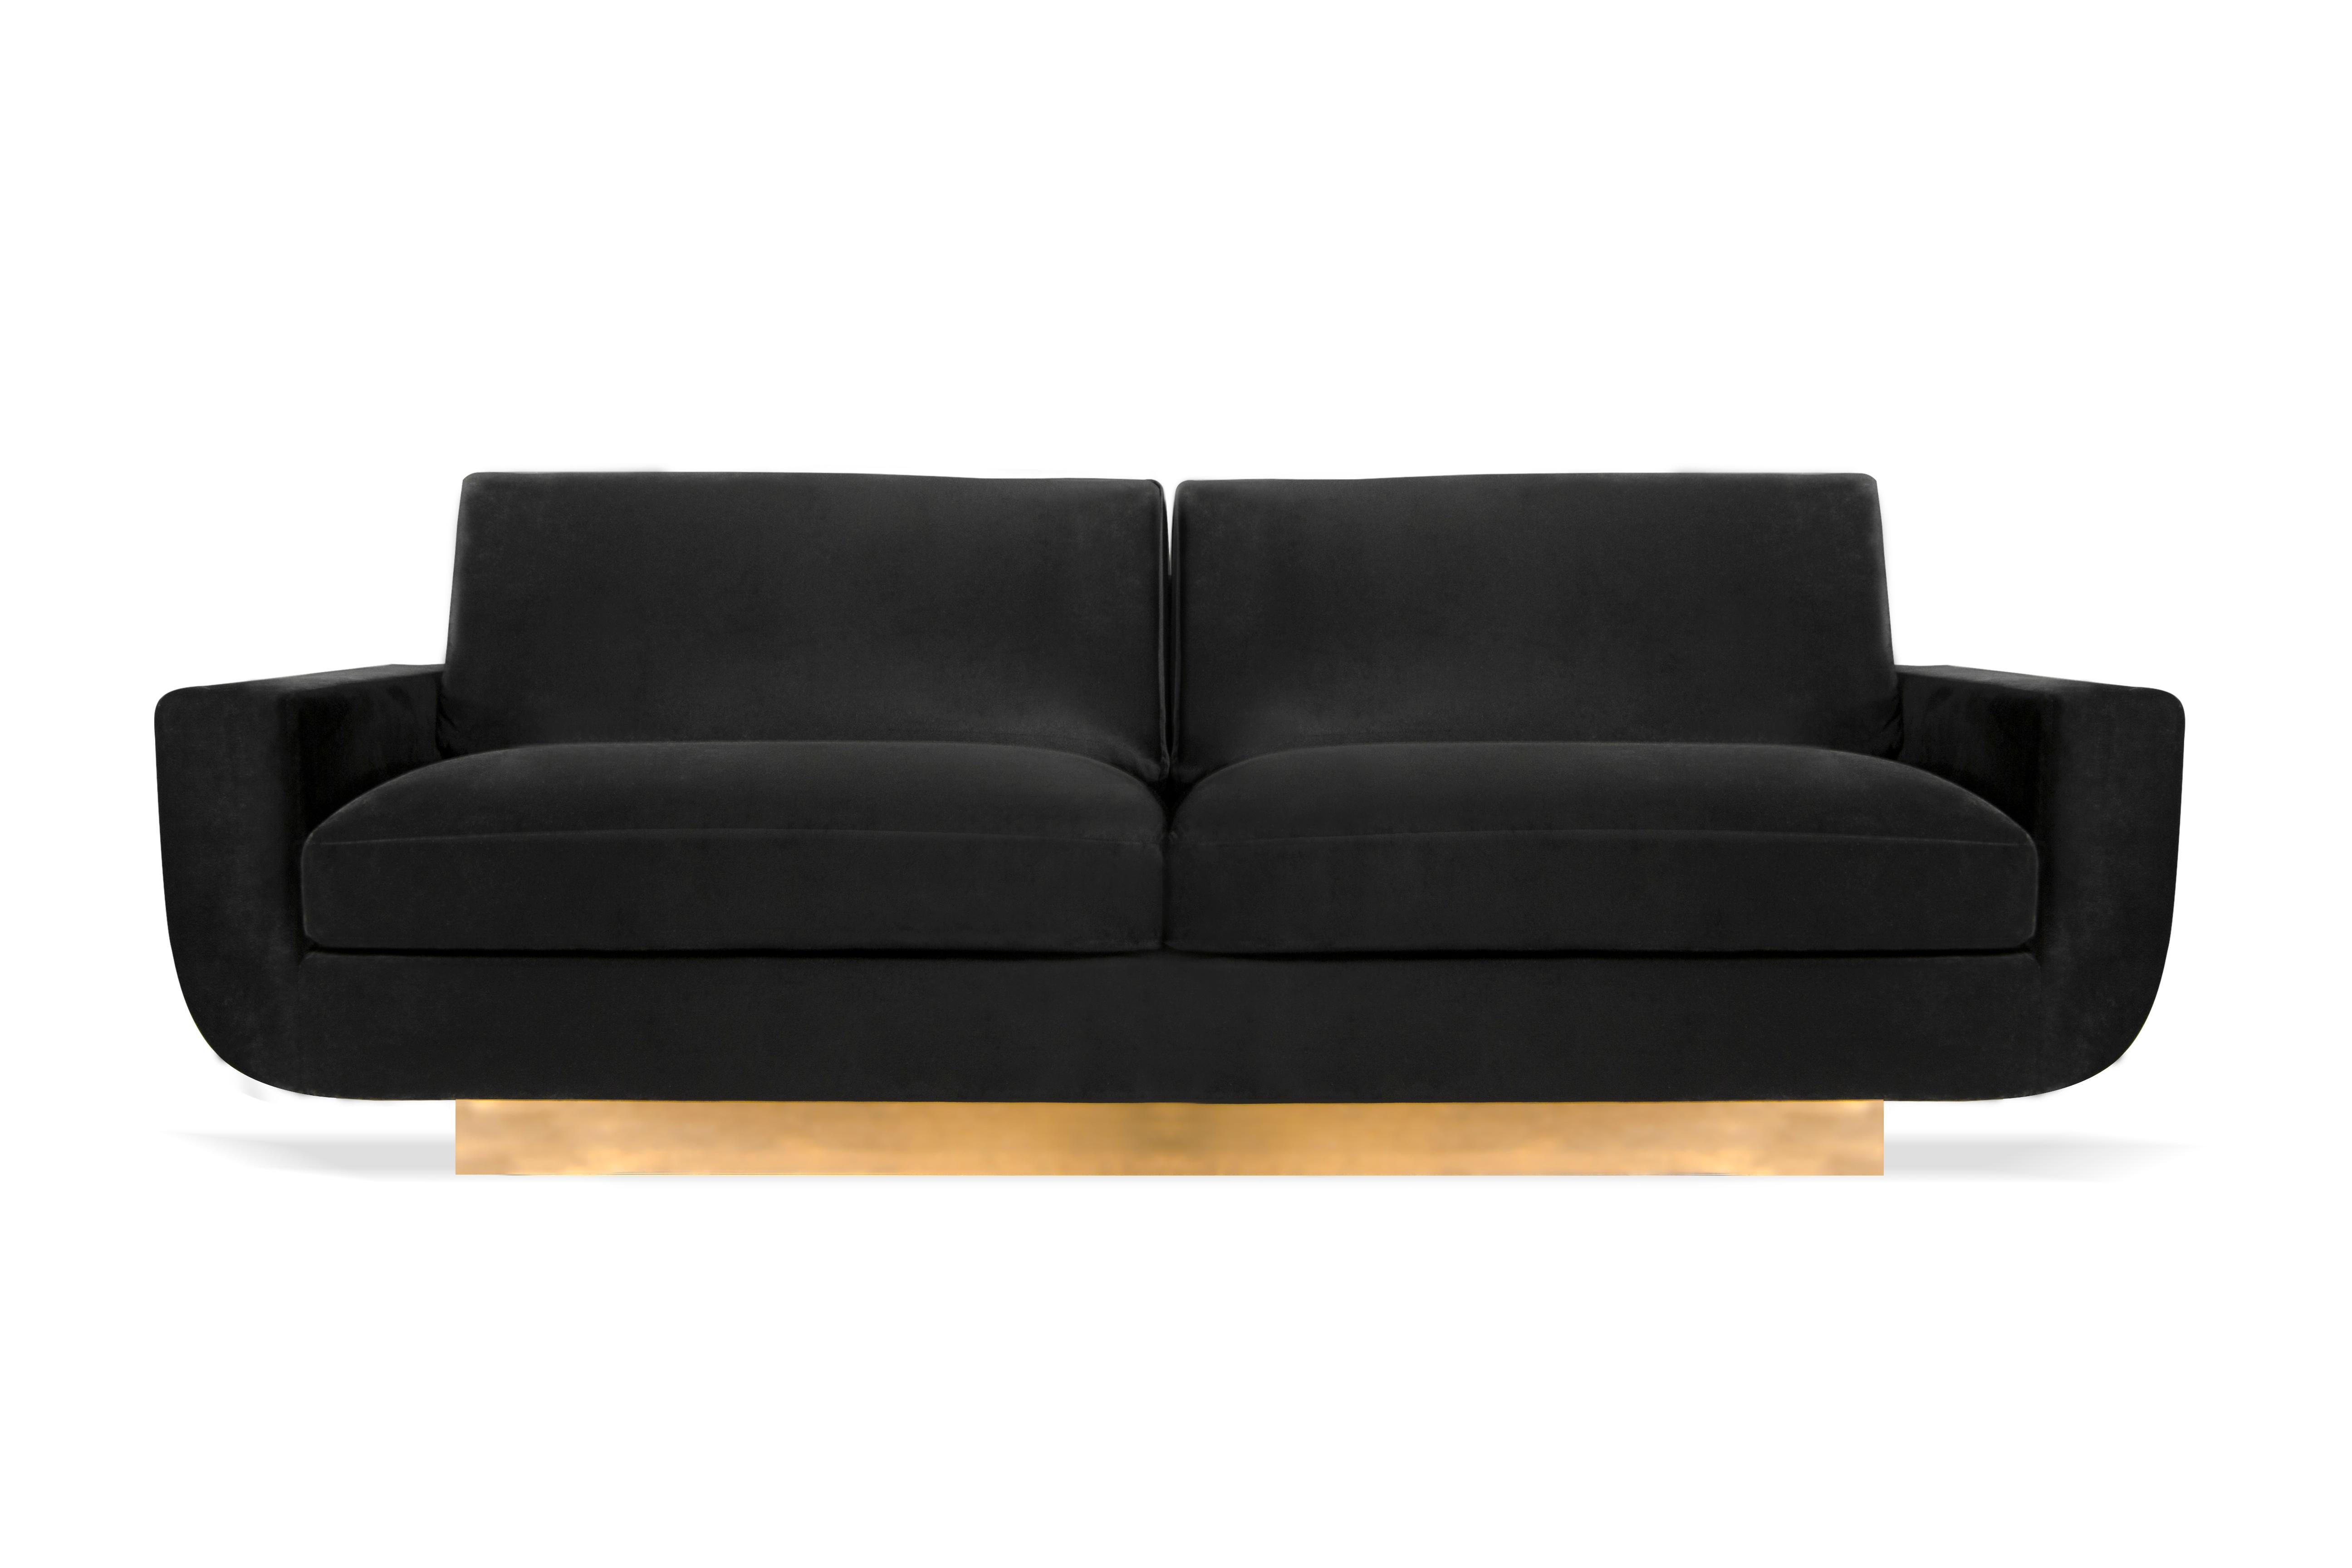 Das Mid-Century Modern Design hat noch nie so edel ausgesehen wie das Sofa Sofia. Ihre zweisitzige Vintage-Form wurde von Koket modern umgestaltet, wobei ihre weichen Kurven von einem glänzenden, geradlinigen Metallgestell umschlossen